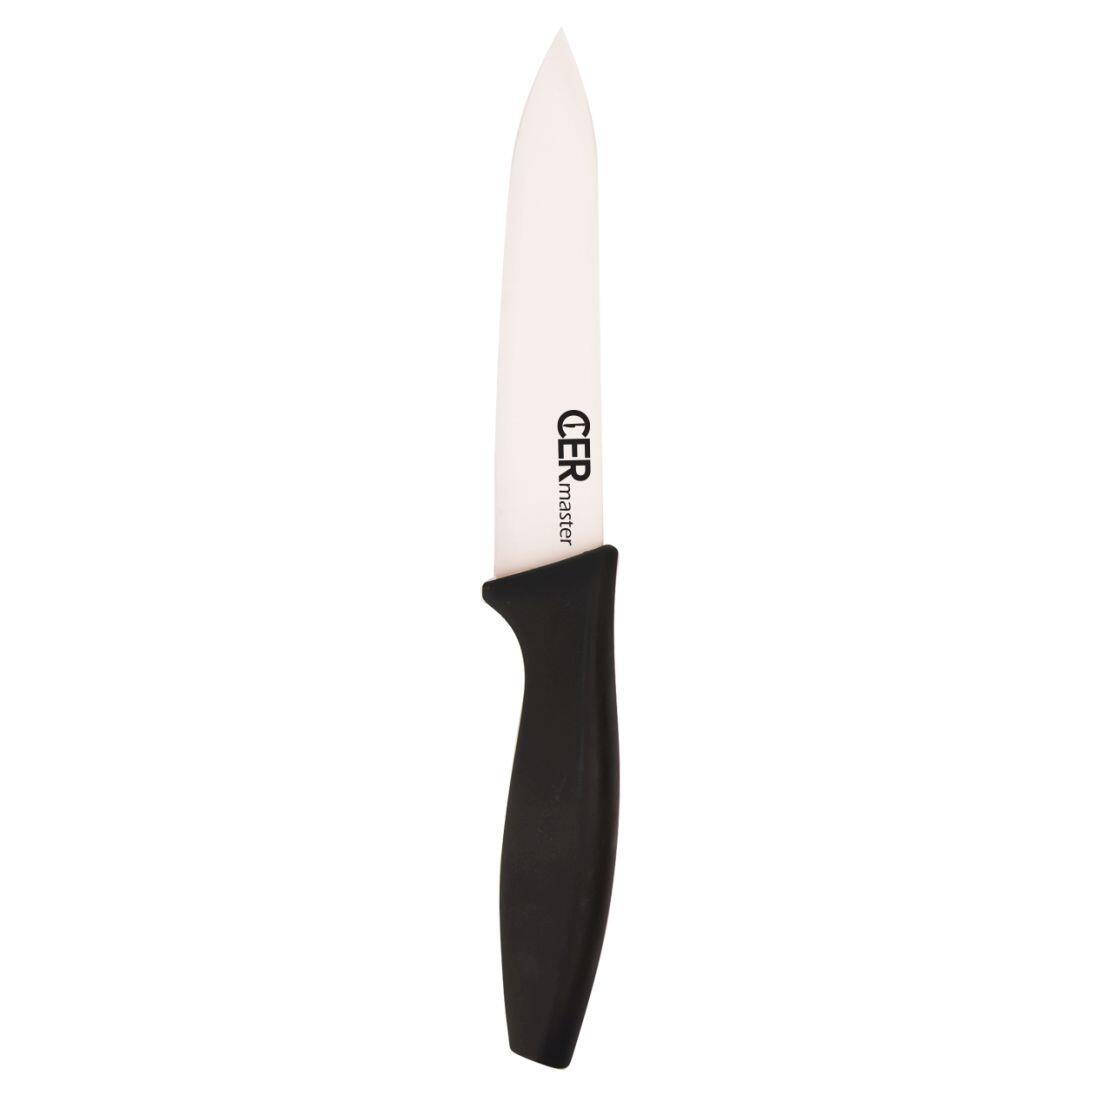 nůž keramický 12,5cm univerzální CERMASTER 0.06 Kg MAXMIX Sklad14 282160 16